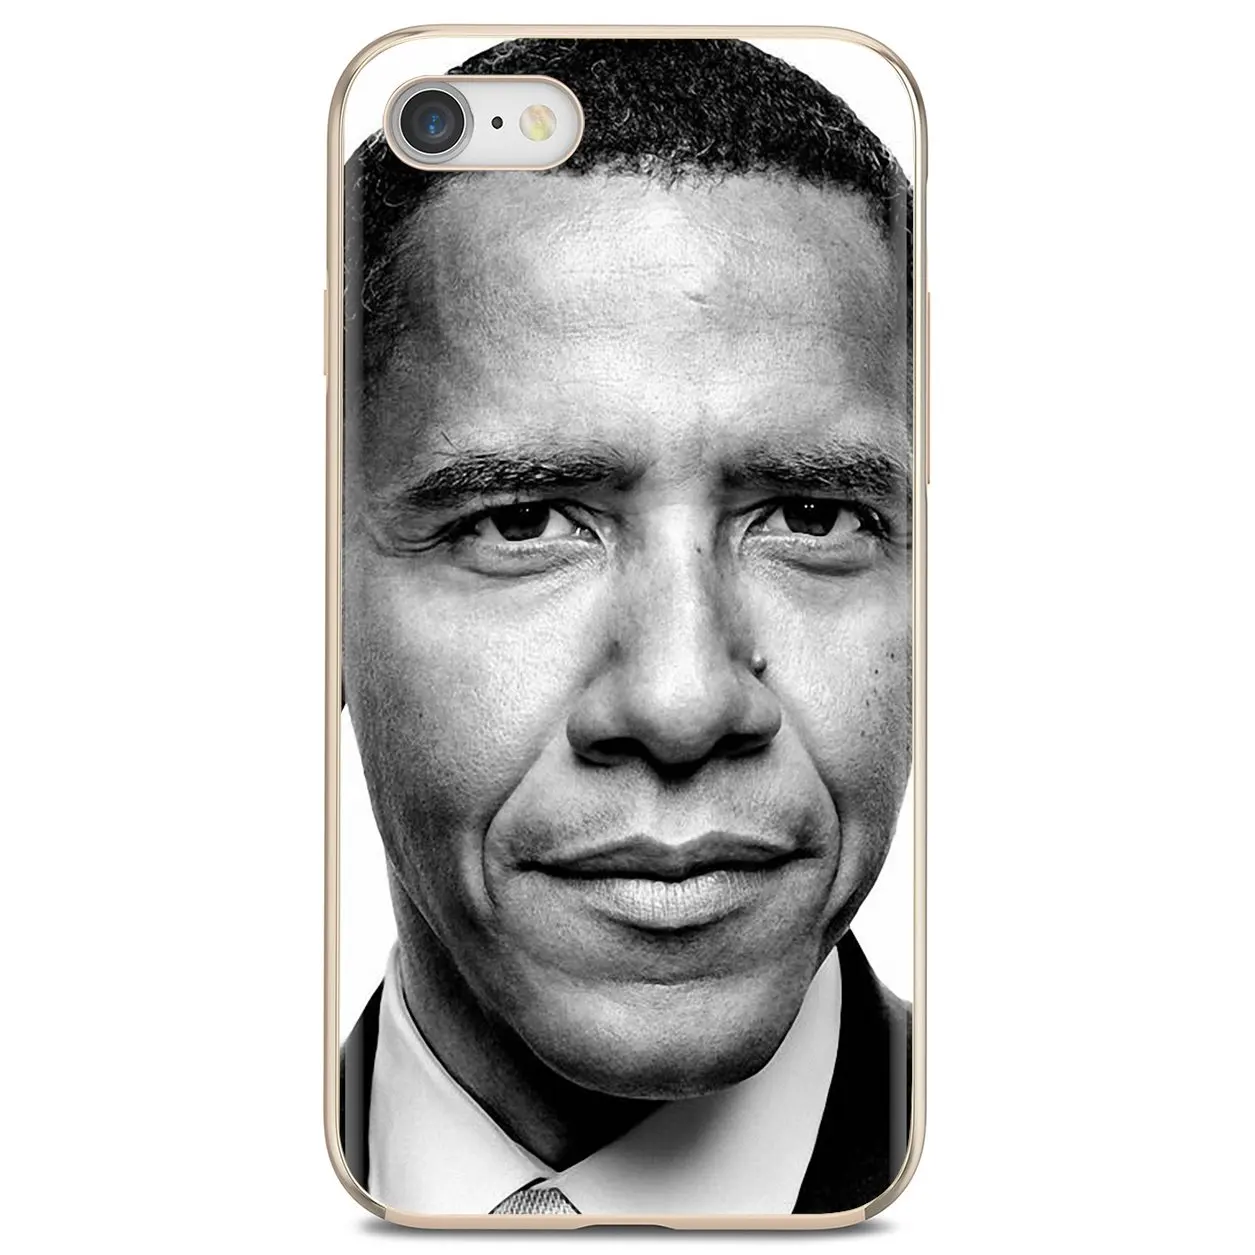 Дешевый силиконовый чехол для телефона Барак хусфин Обама II iPhone iPod Touch 11 12 Pro 4 4S 5 5S